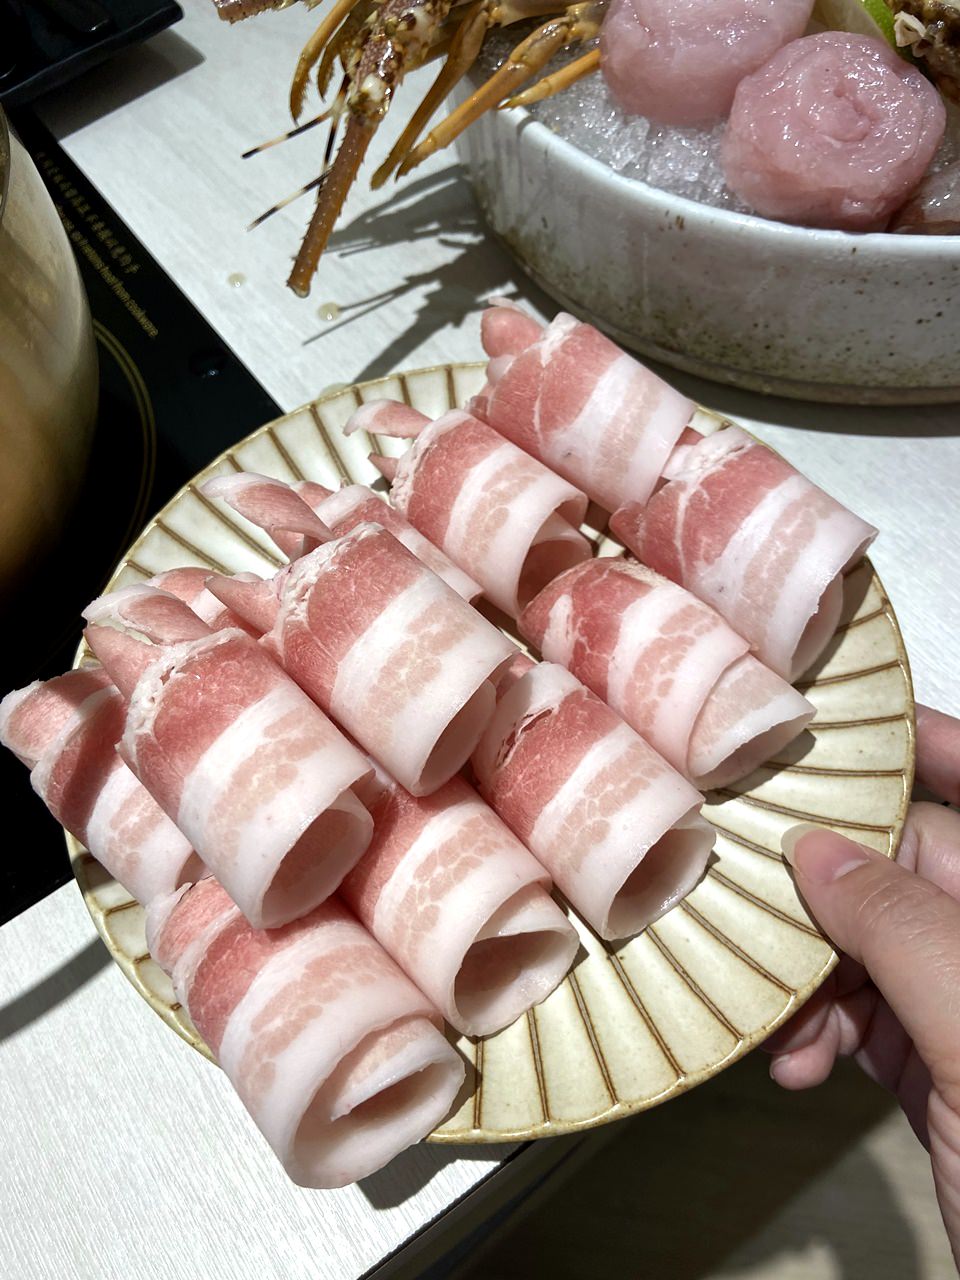 經典小海陸-豬肉海鮮盒 ▲ 299元 推薦!!!!